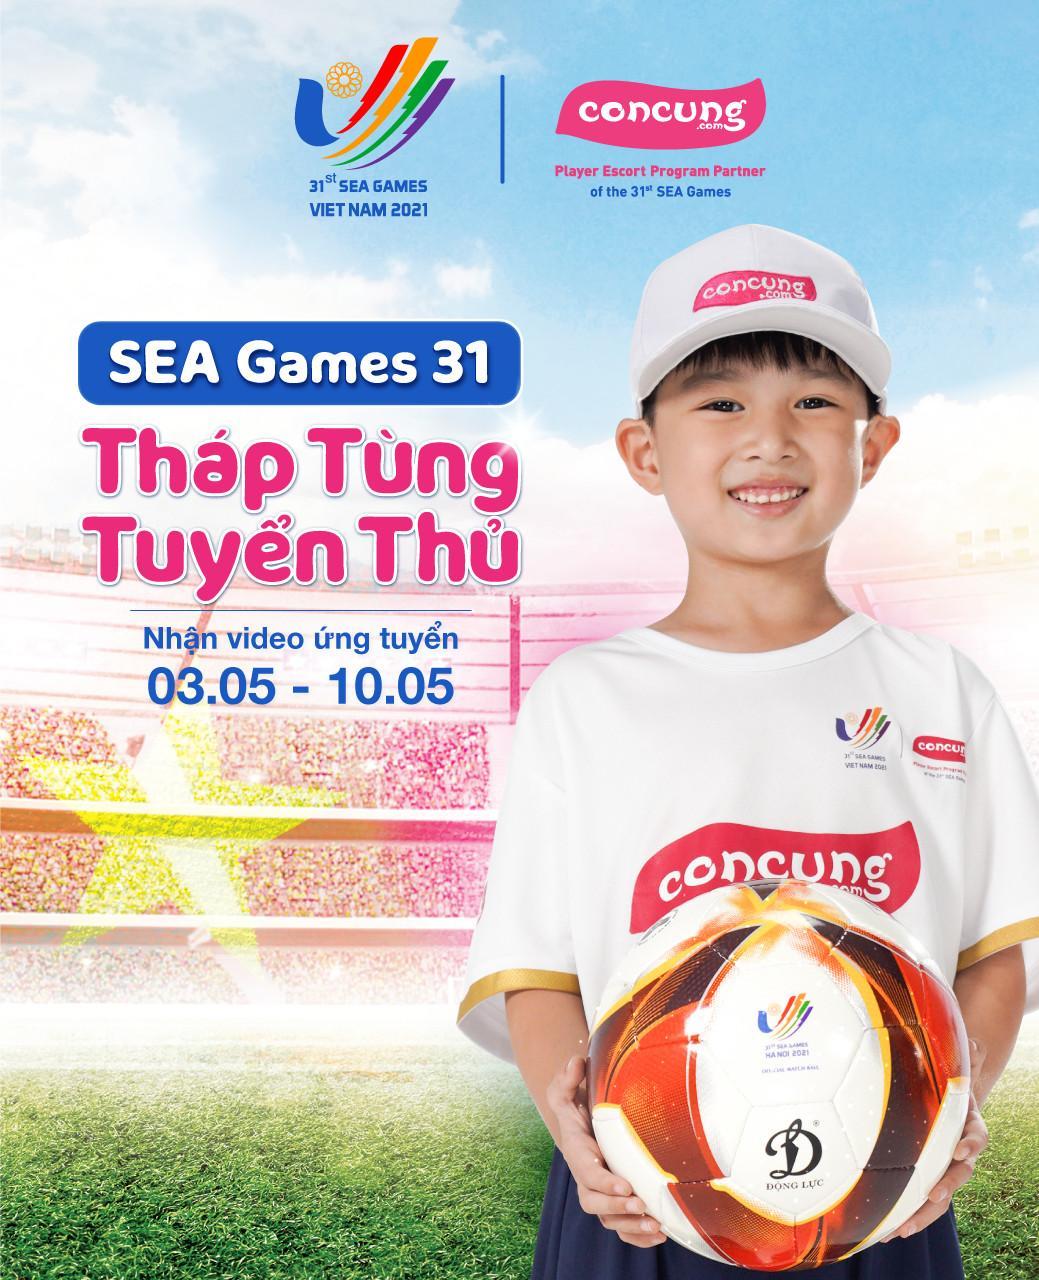 Bé đam mê thể thao? Lần đầu tiên bóng đá Việt Nam tìm kiếm 8 em bé tháp tùng tuyển thủ tại SEA Games 31 - Ảnh 2.